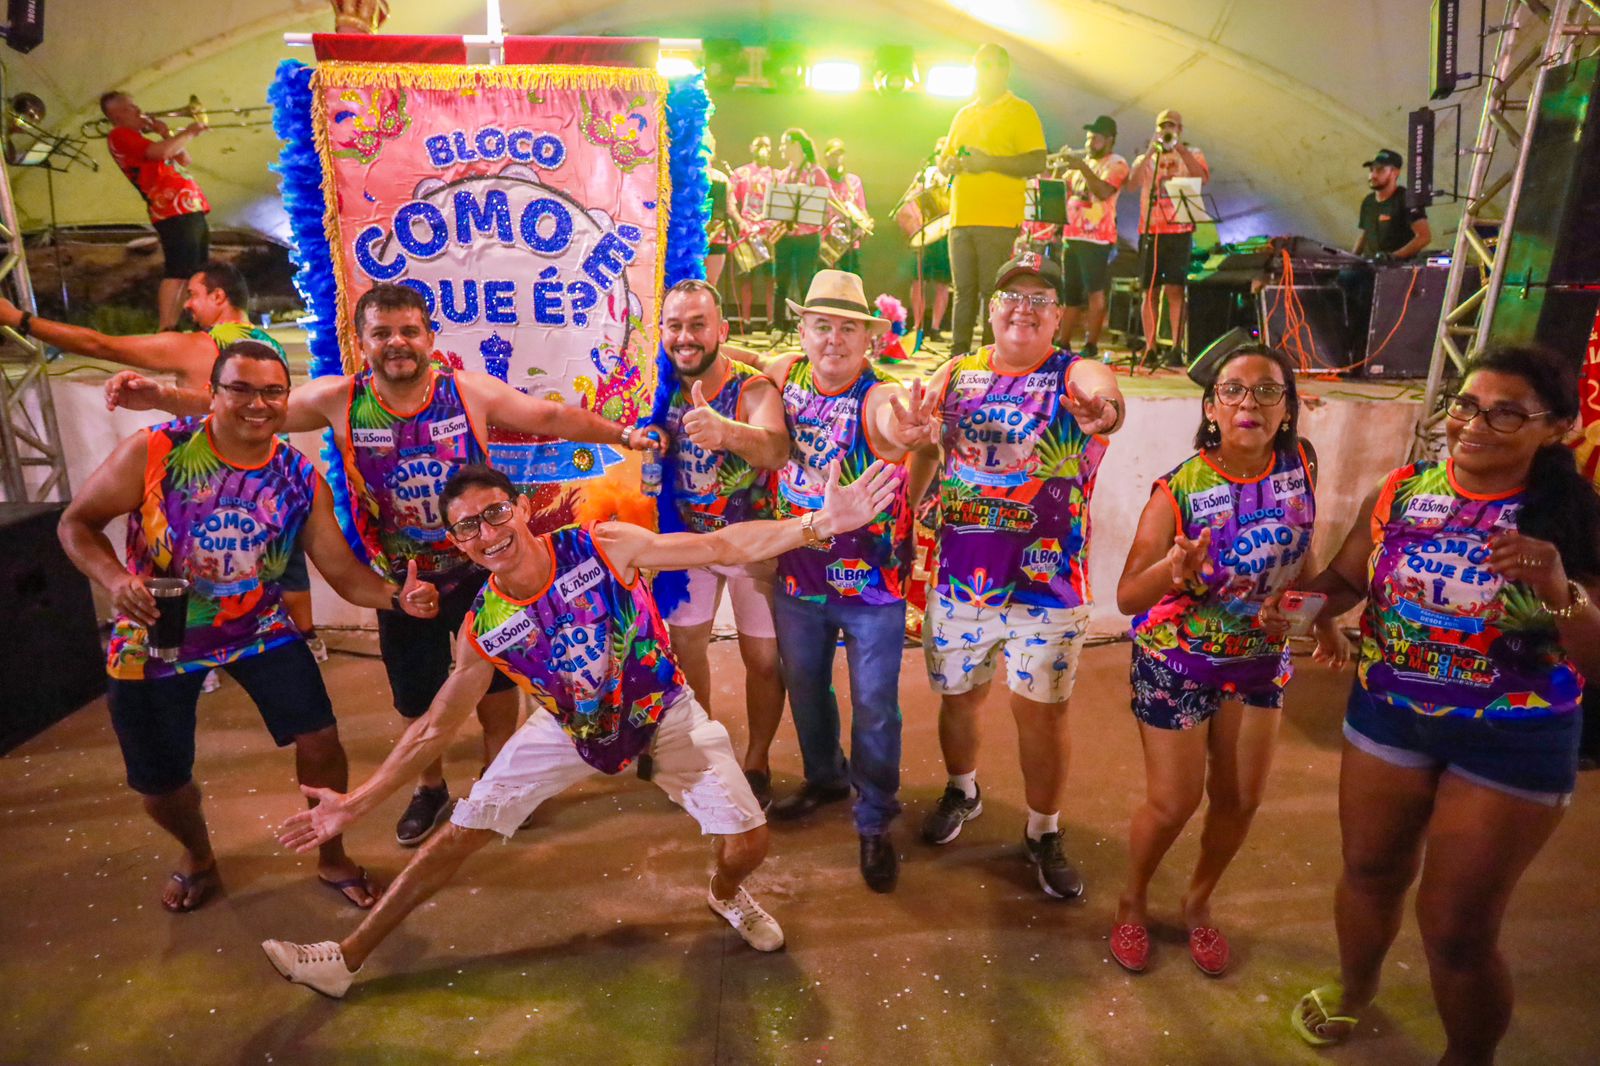 Arapiraca abre o carnaval com escolha do Rei Momo, Rainha do Carnaval e melhor estandarte com muito frevo e animação